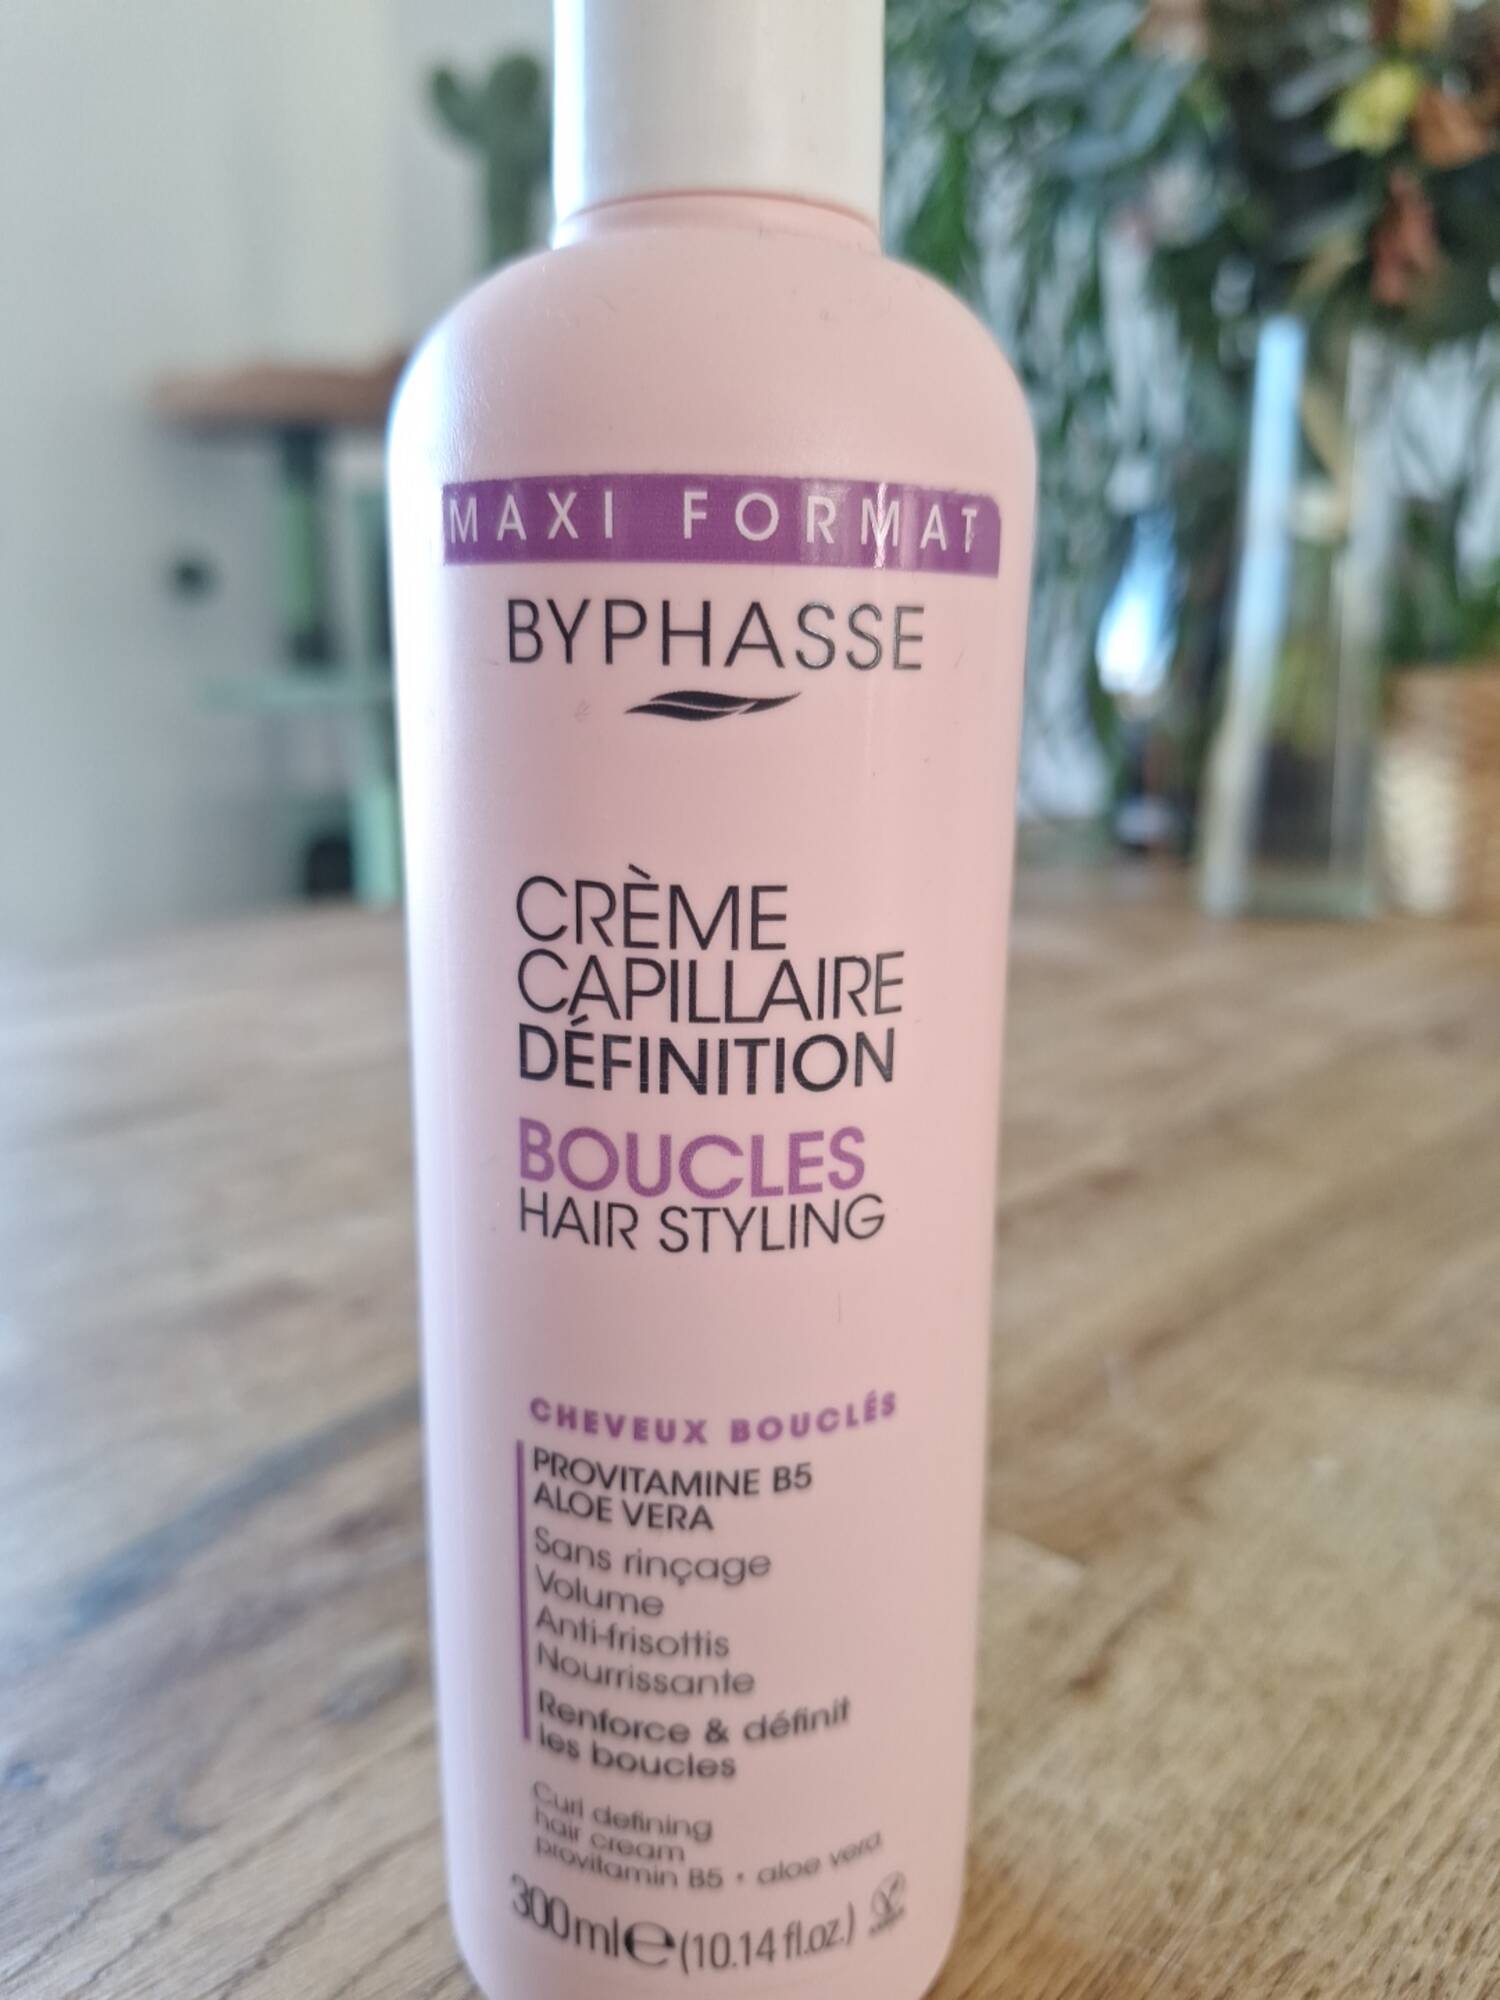 BYPHASSE - Crème capillaire définition boucles